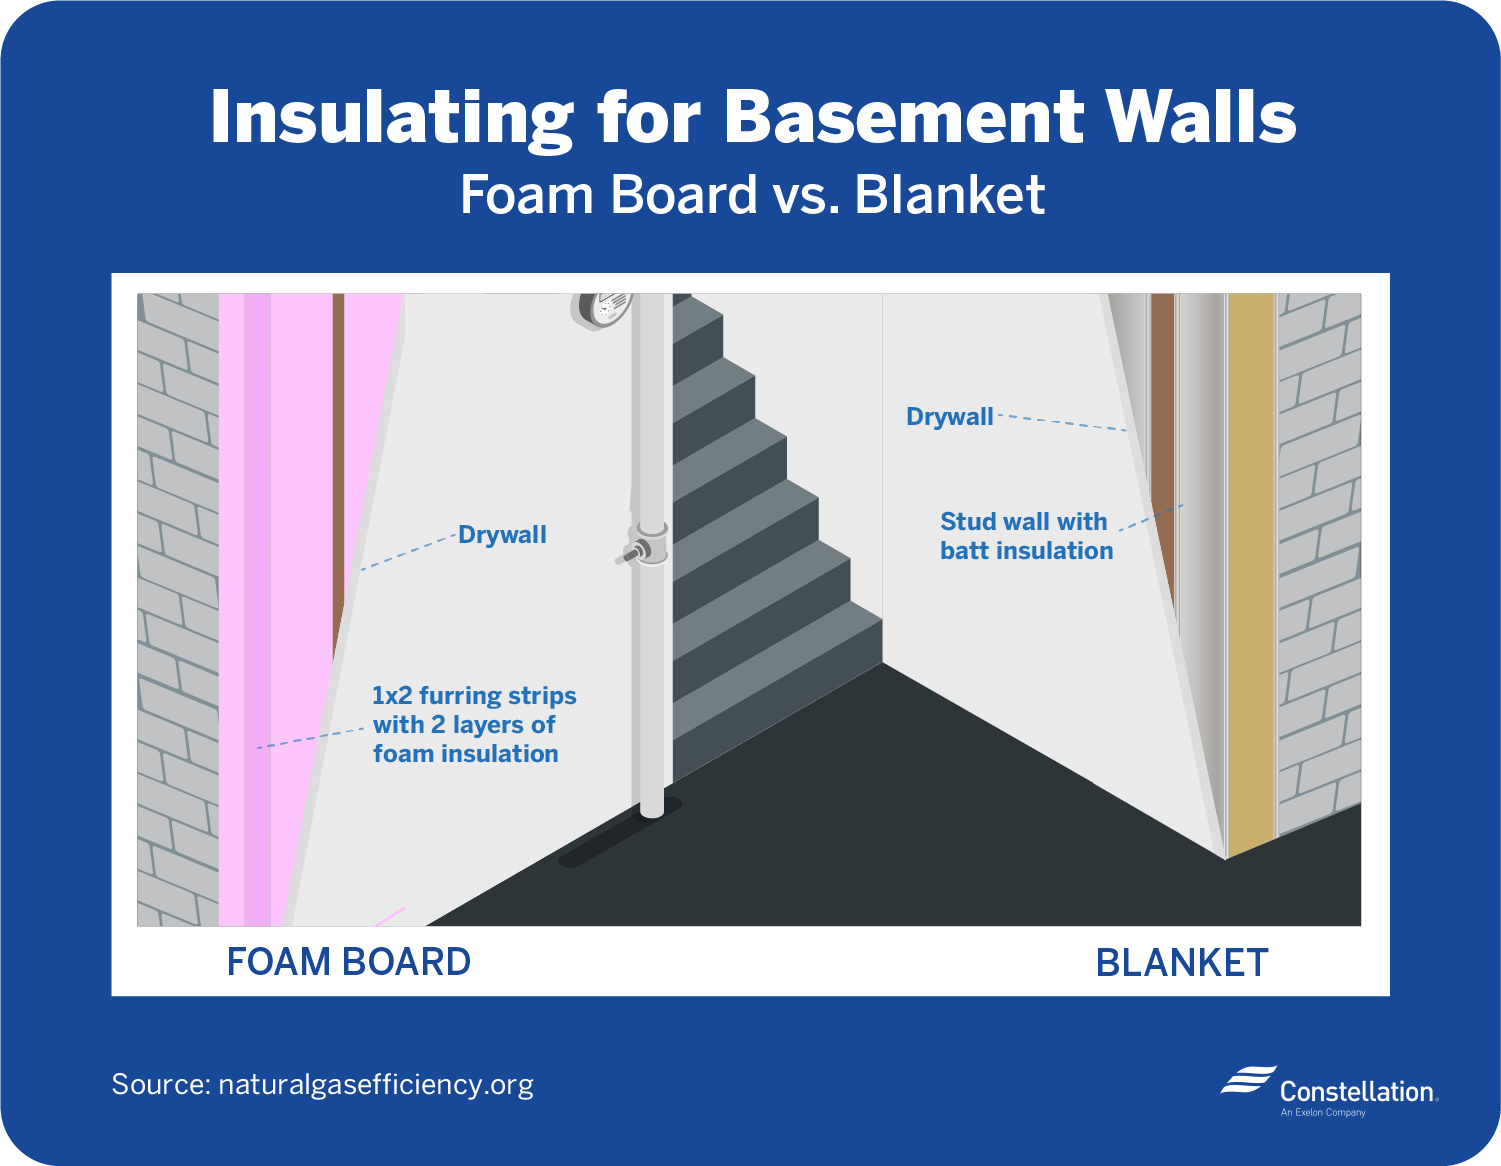 Insulating for basement walls — blanket vs foam board